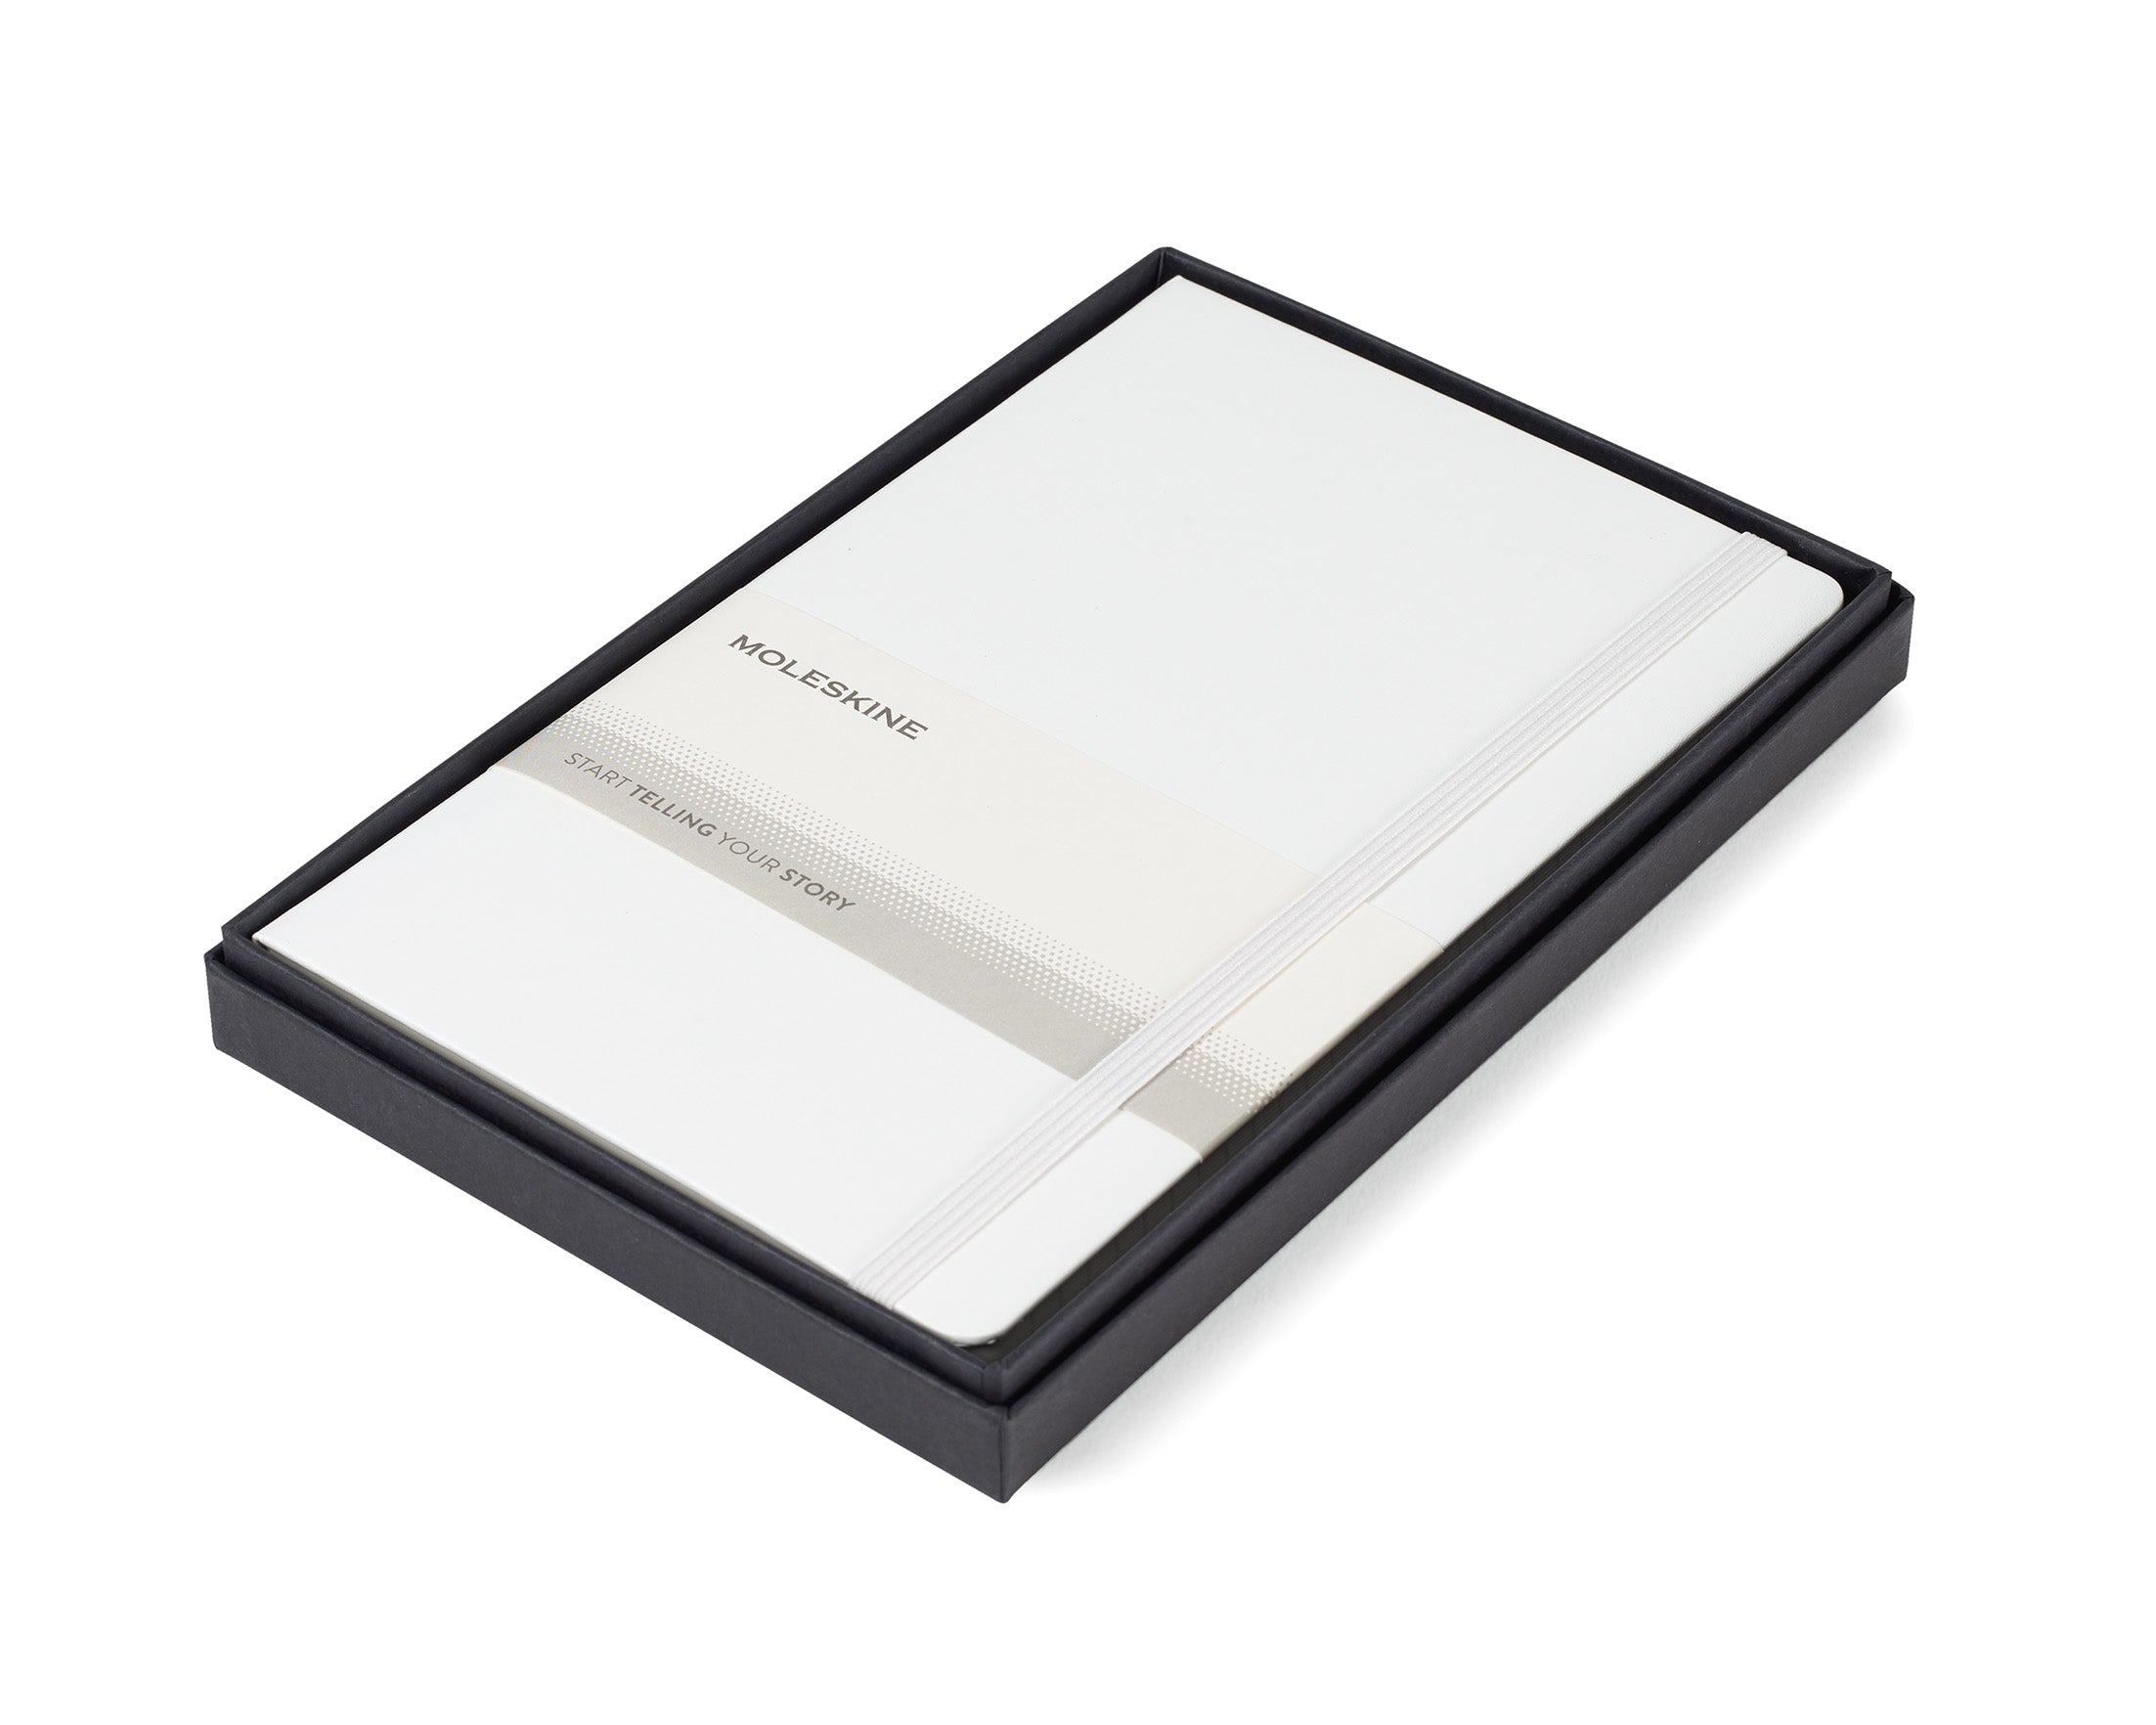 Moleskine® Large Notebook Gift Set